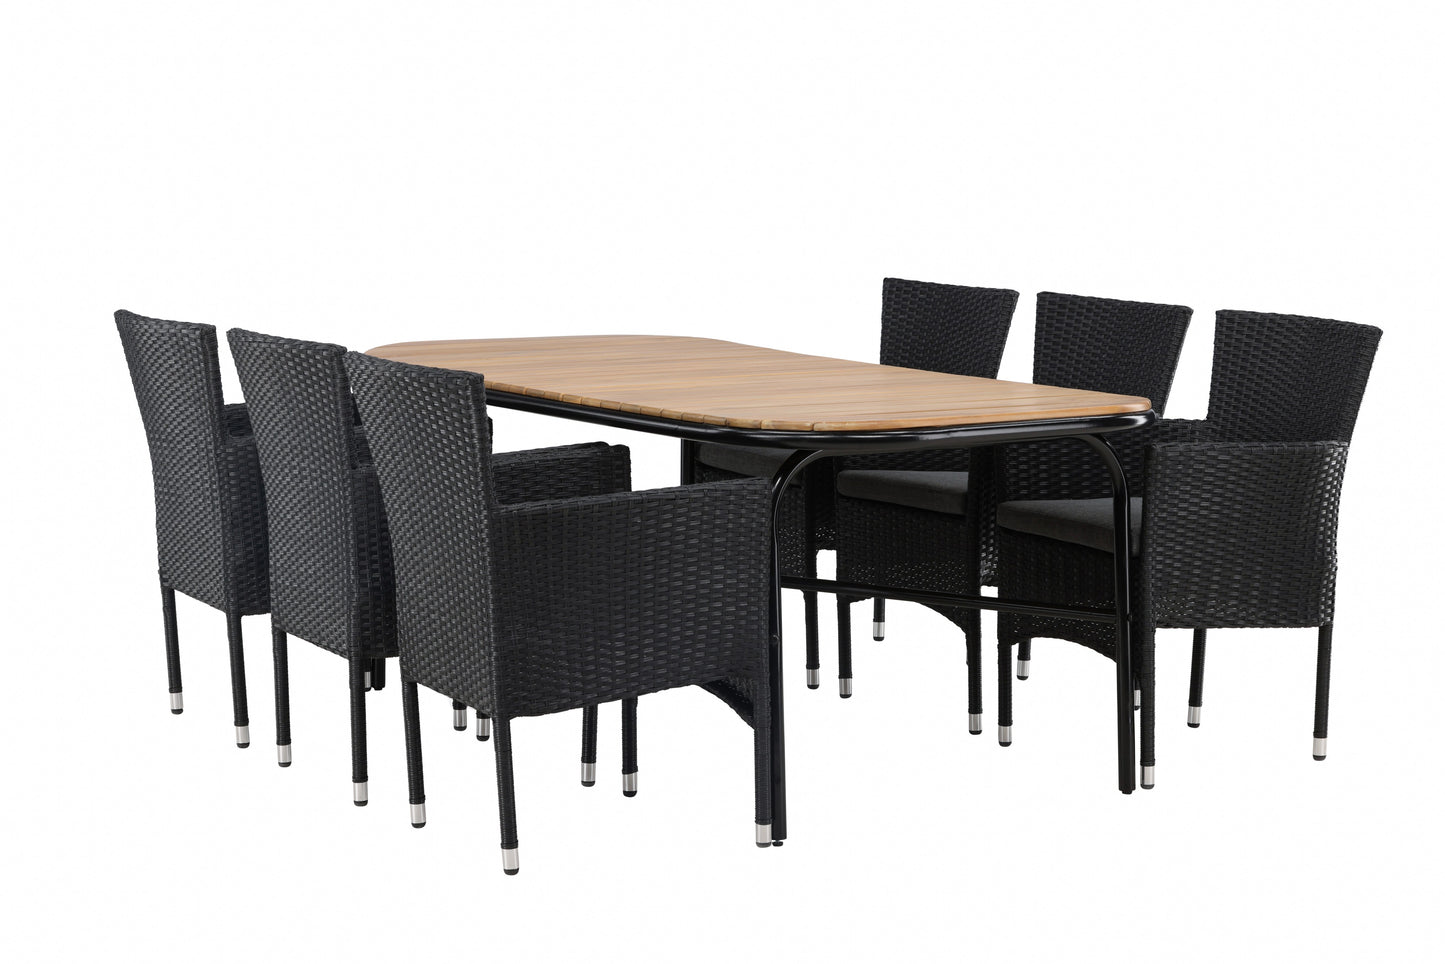 Holmbeck - Spisebord, Stål - Sort / Rektangulær 90*200*75 + Malia stol Aluminium - Sort / flet